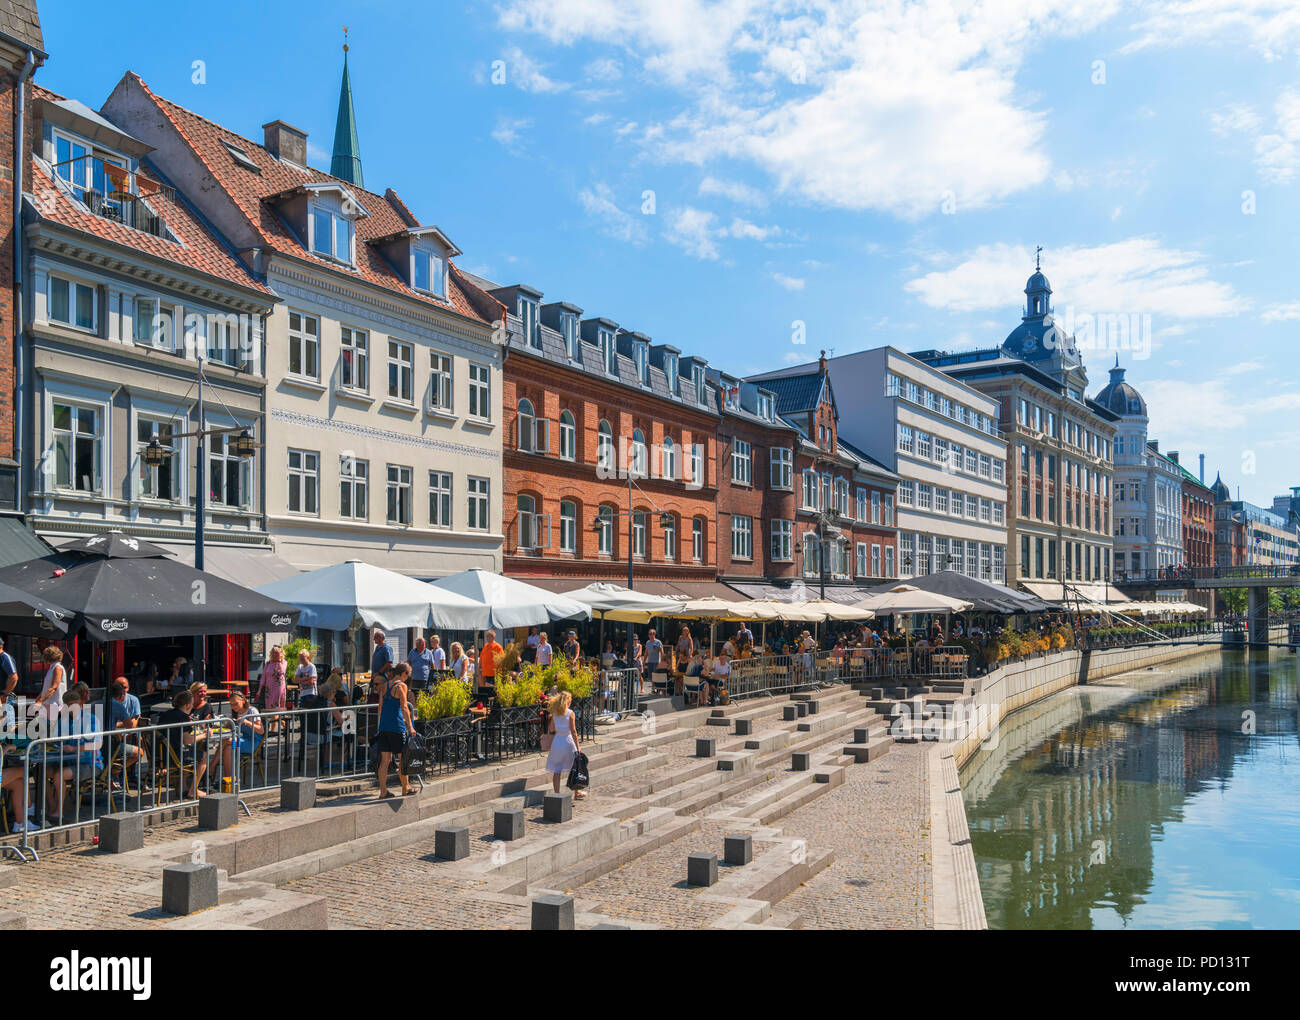 Geschäfte, Cafés und Restaurants entlang des Flusses in der Stadt Aarhus, Aarhus, Dänemark Stockfoto